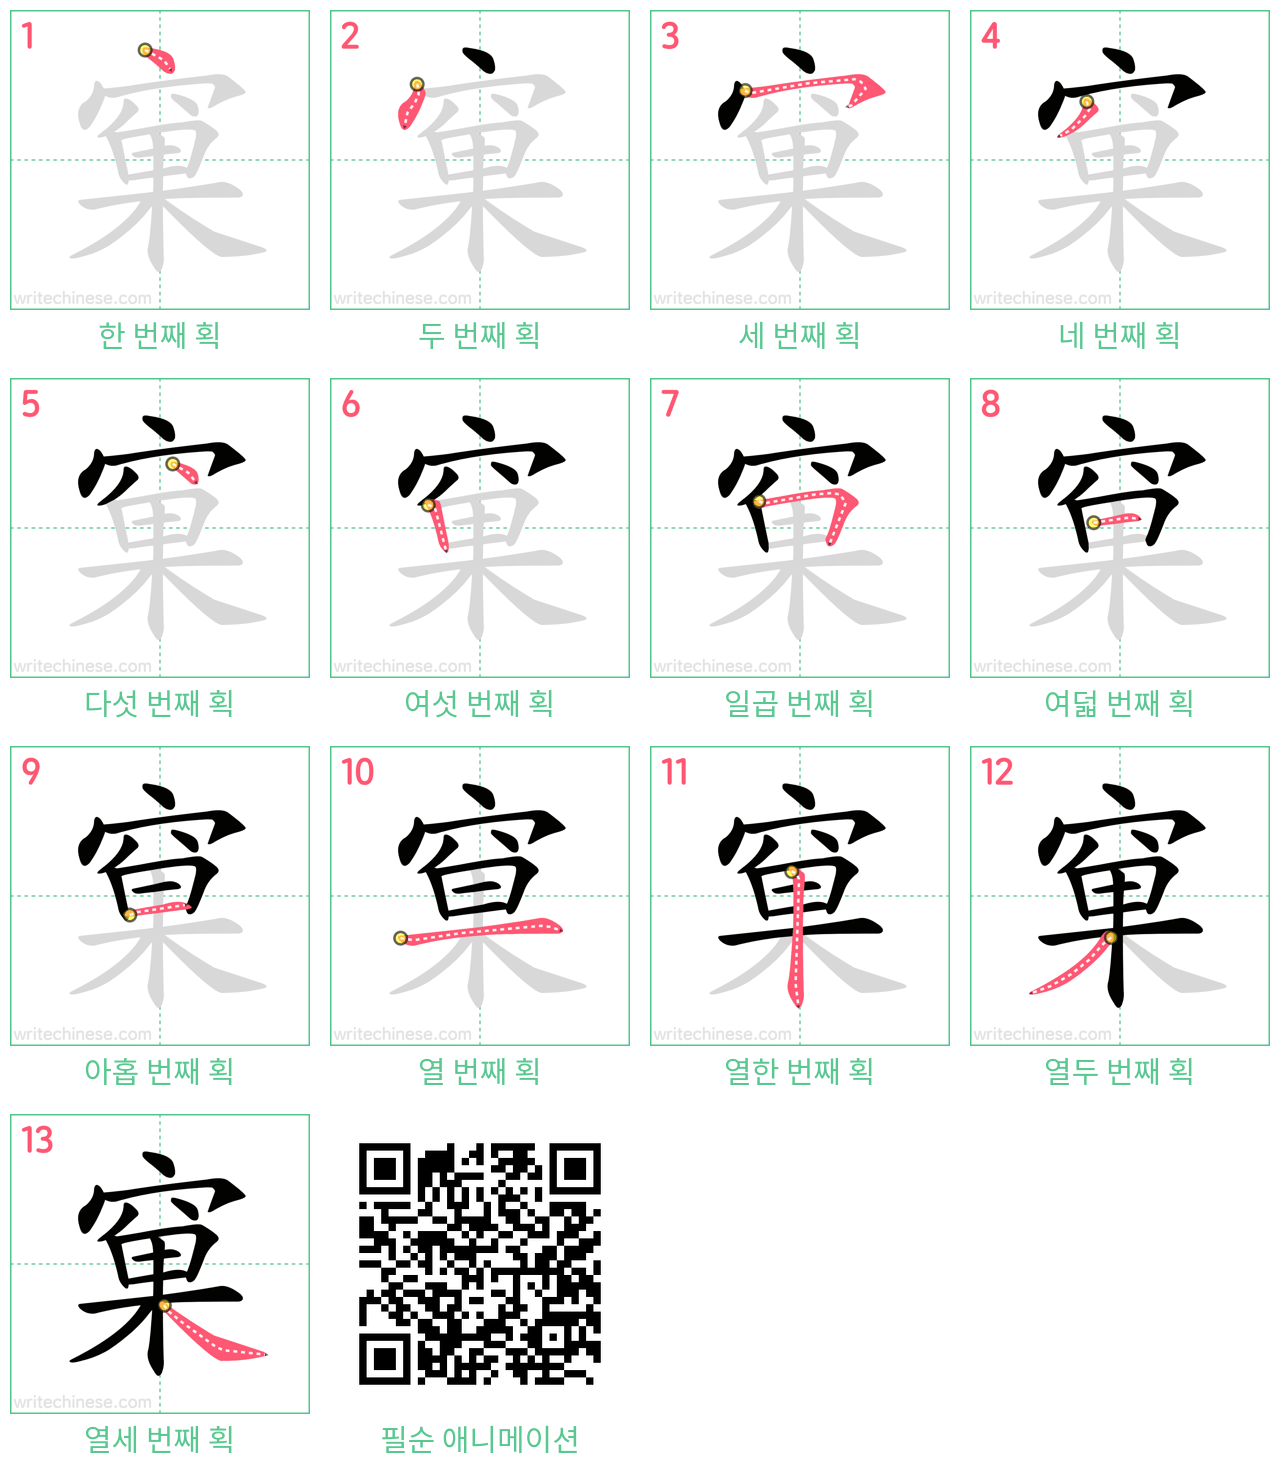 窠 step-by-step stroke order diagrams